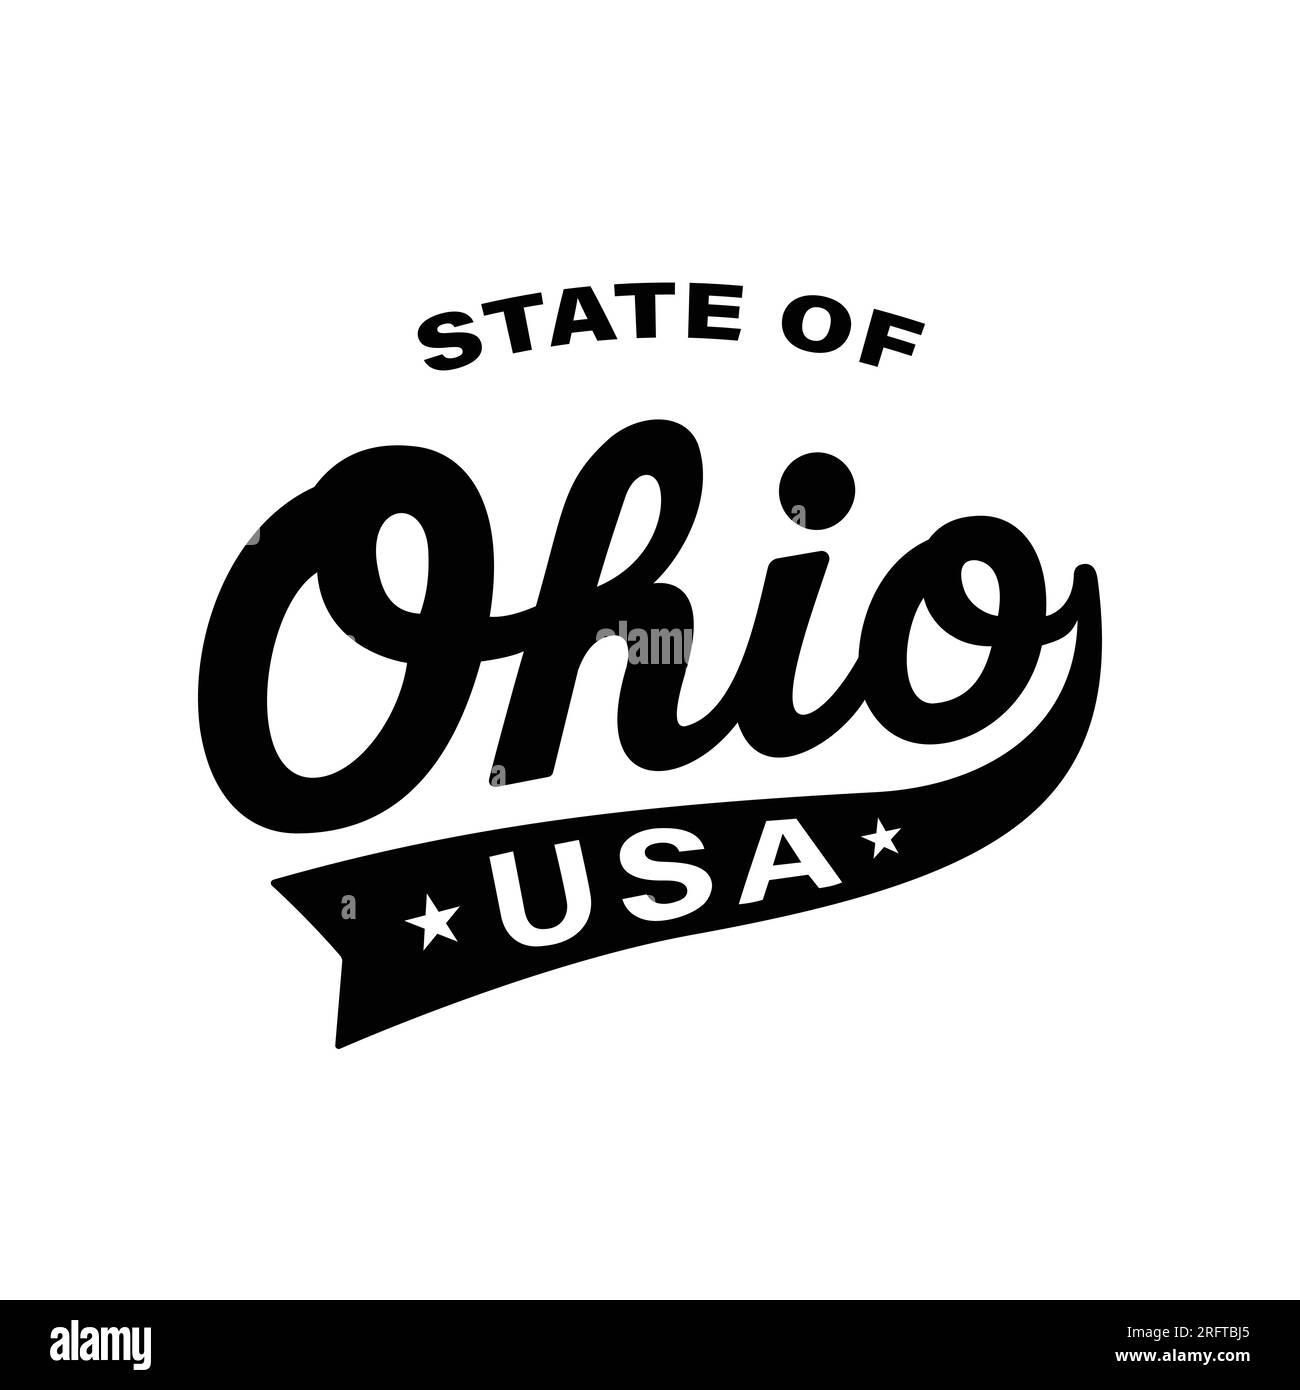 Motif lettrage State of Ohio. Ohio, États-Unis, conception typographique. Ohio, conception de texte. Vecteur et illustration. Illustration de Vecteur